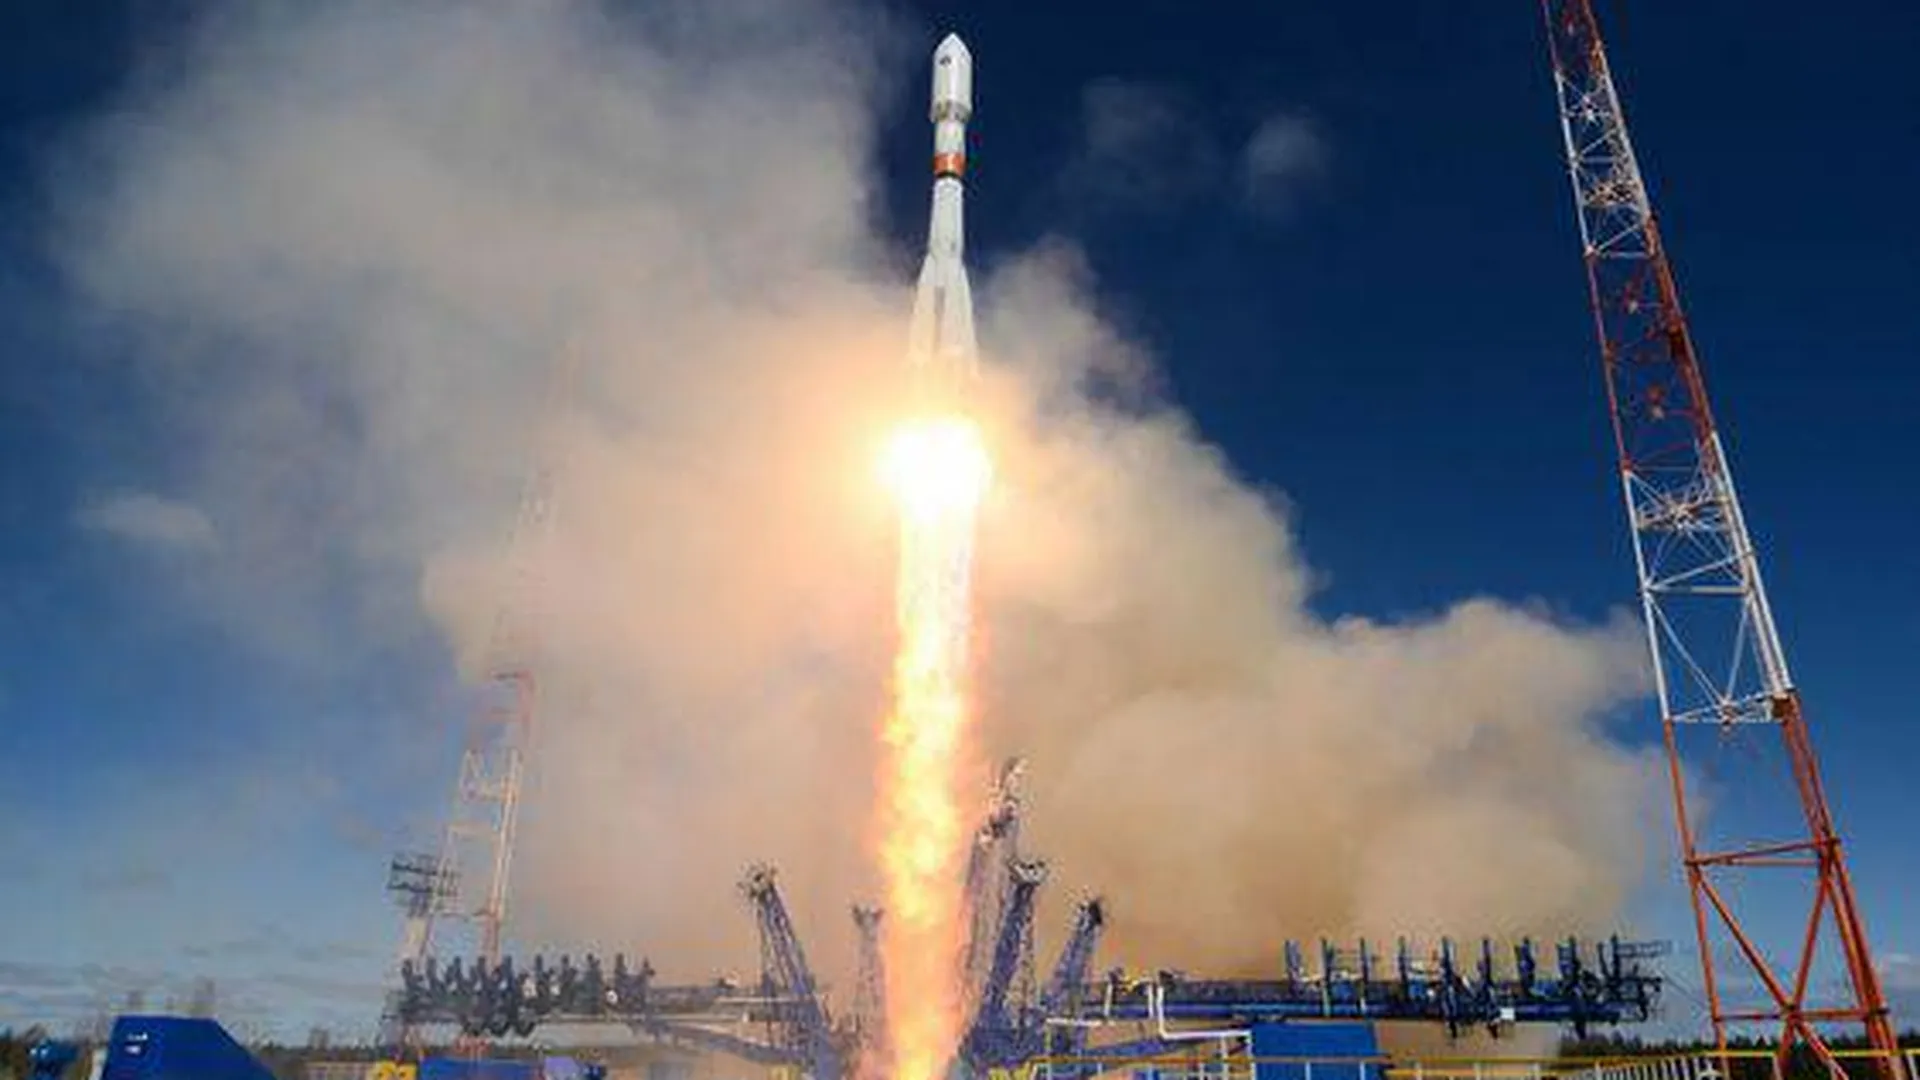 Запуск ракеты сегодня с космодрома байконур. Ракета Союз 2. Союз 2 Плесецк. Союз-2.1а ракета-носитель. Космодром Байконур старт ракеты Союз-2.1а.